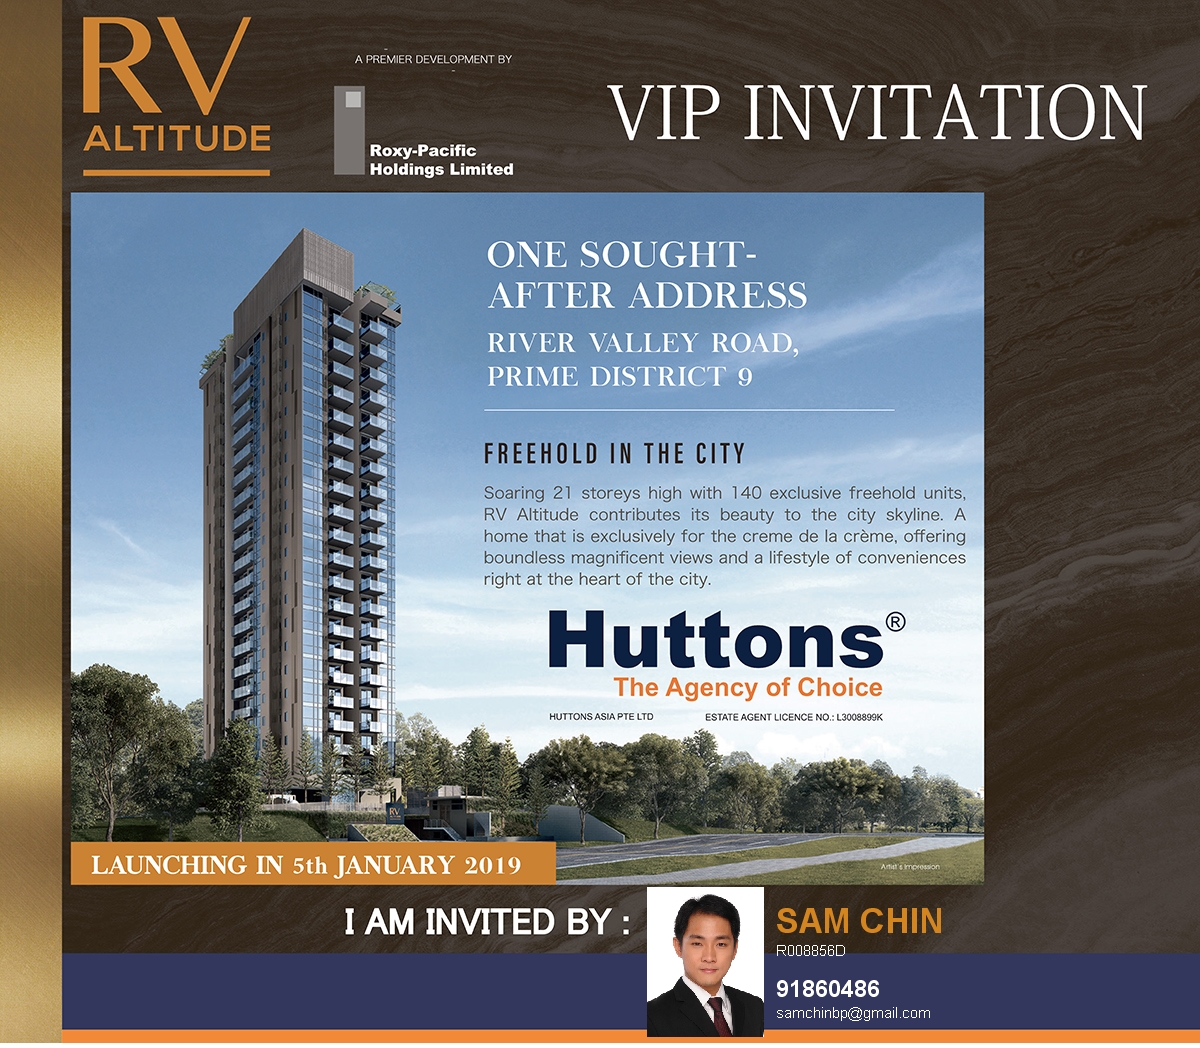 RV Altitude - VIP Invitation